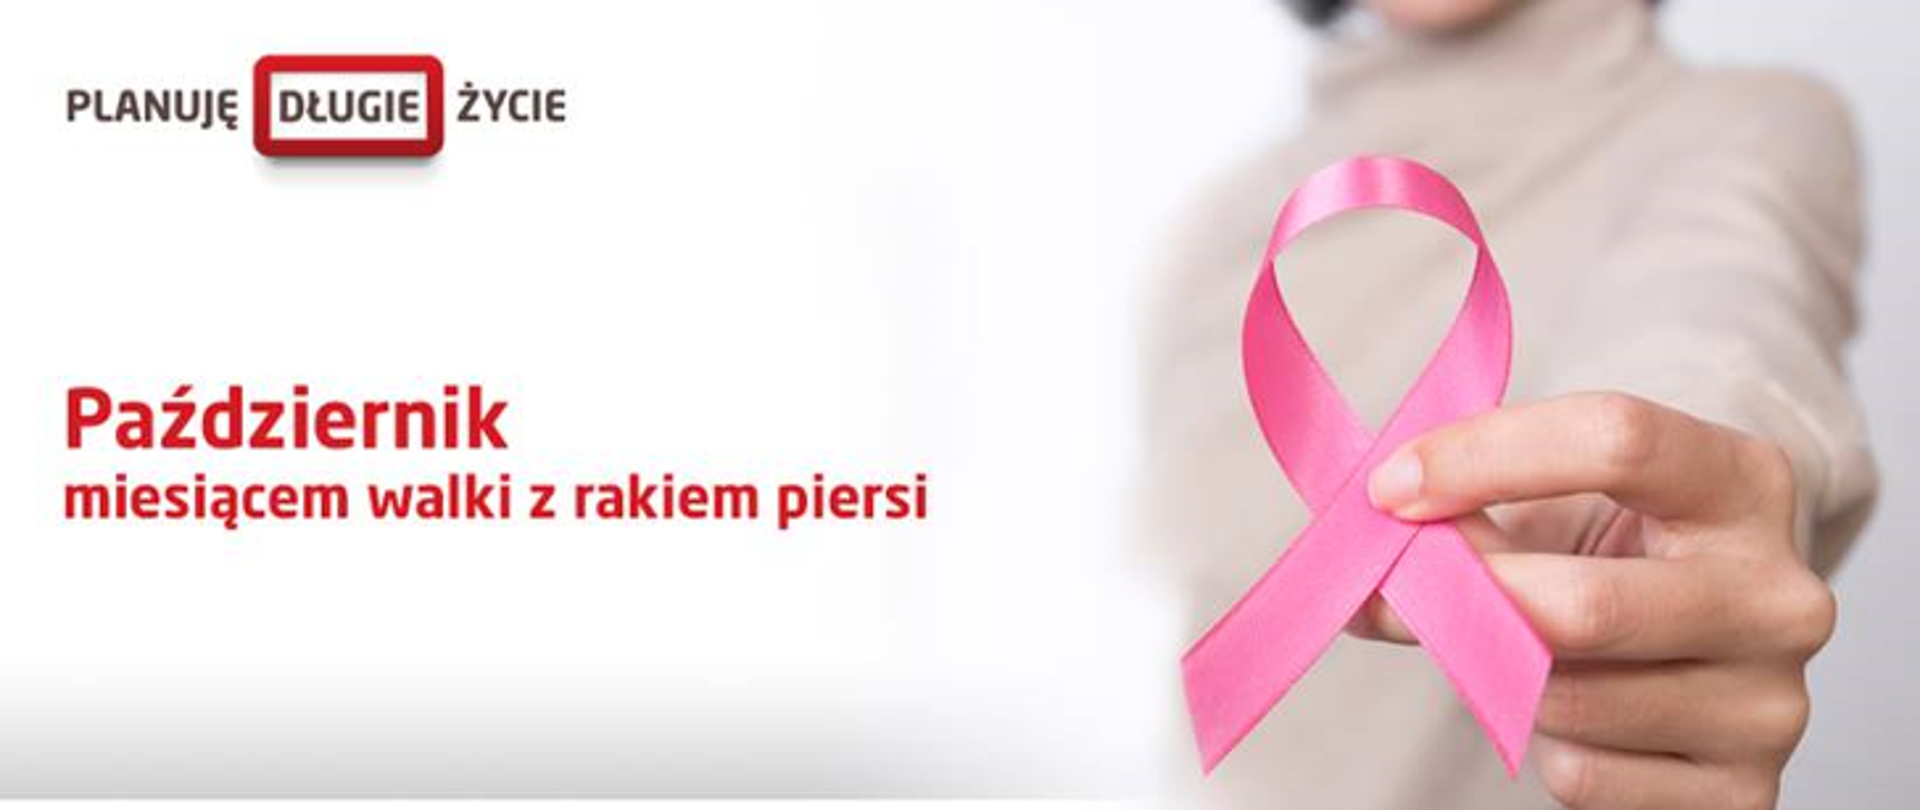 Pażdziernik miesiąc walki z rakiem piersi